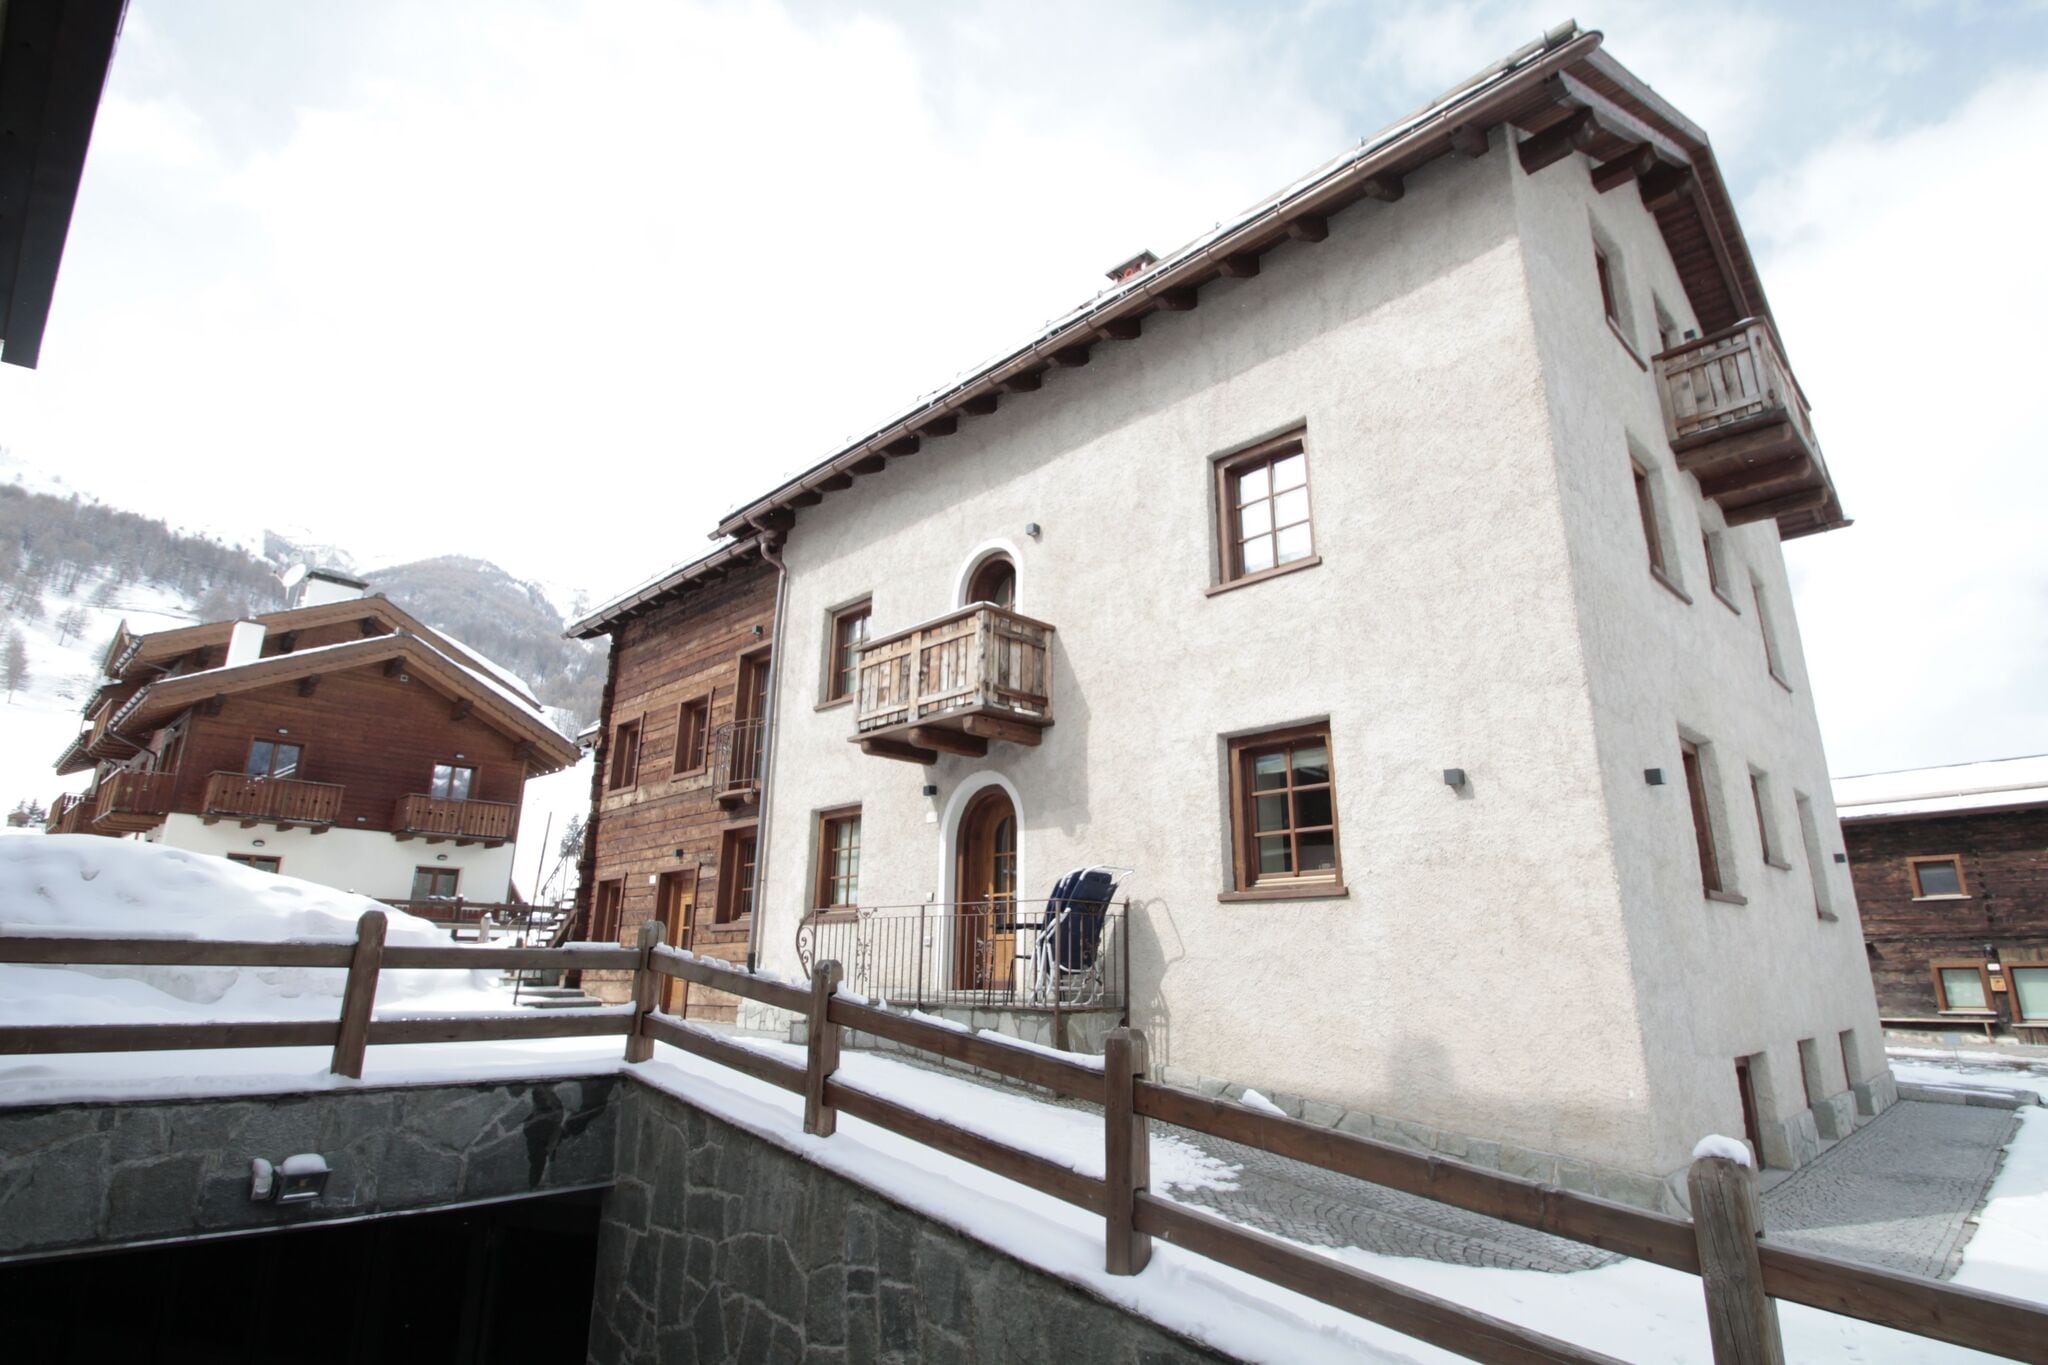 Gloednieuw appartement in Livigno, in het skigebied